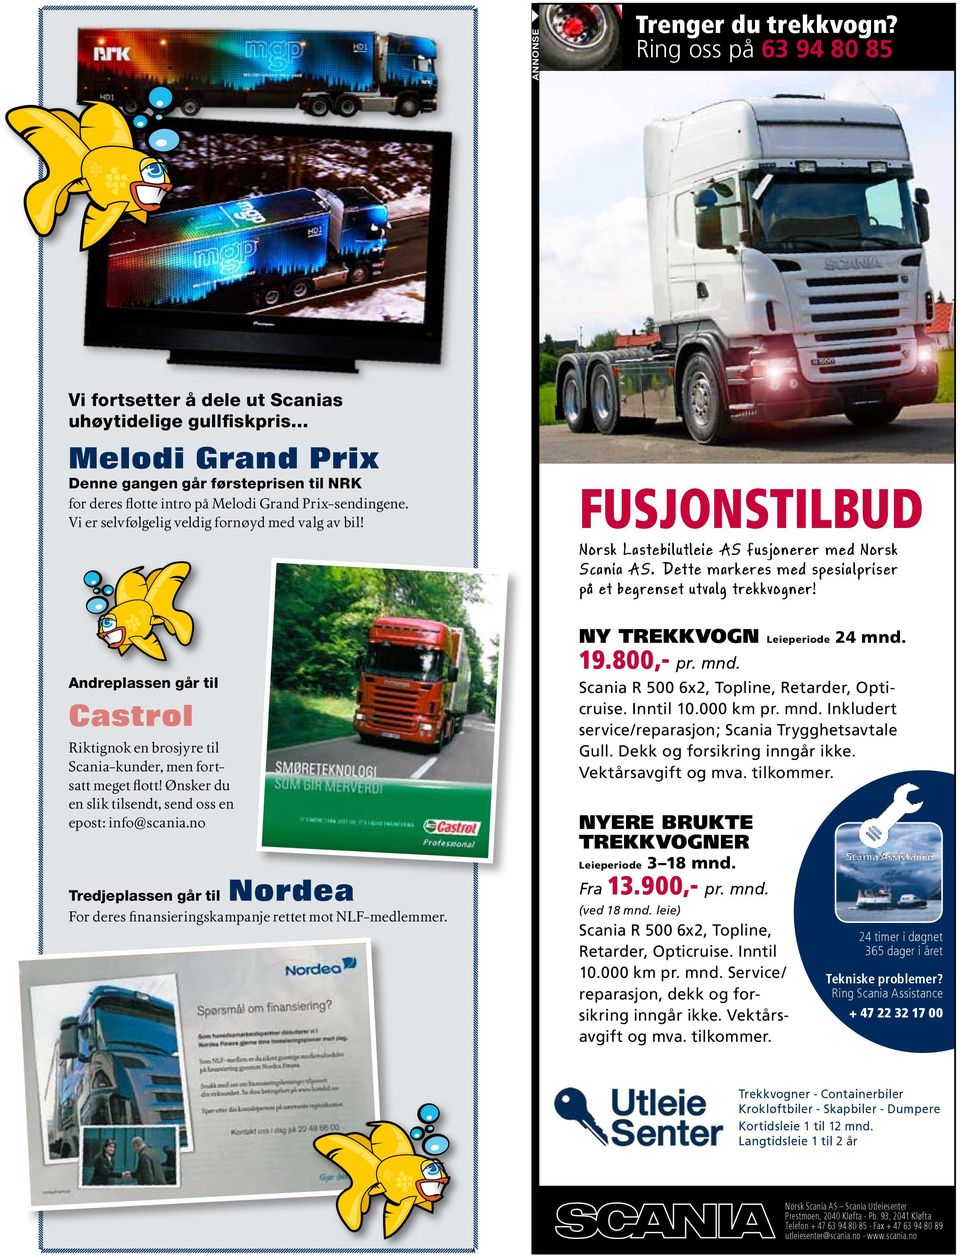 FUSJONSTILBUD Norsk Lastebilutleie AS fusjonerer med Norsk Scania AS. Dette markeres med spesialpriser på et begrenset utvalg trekkvogner!